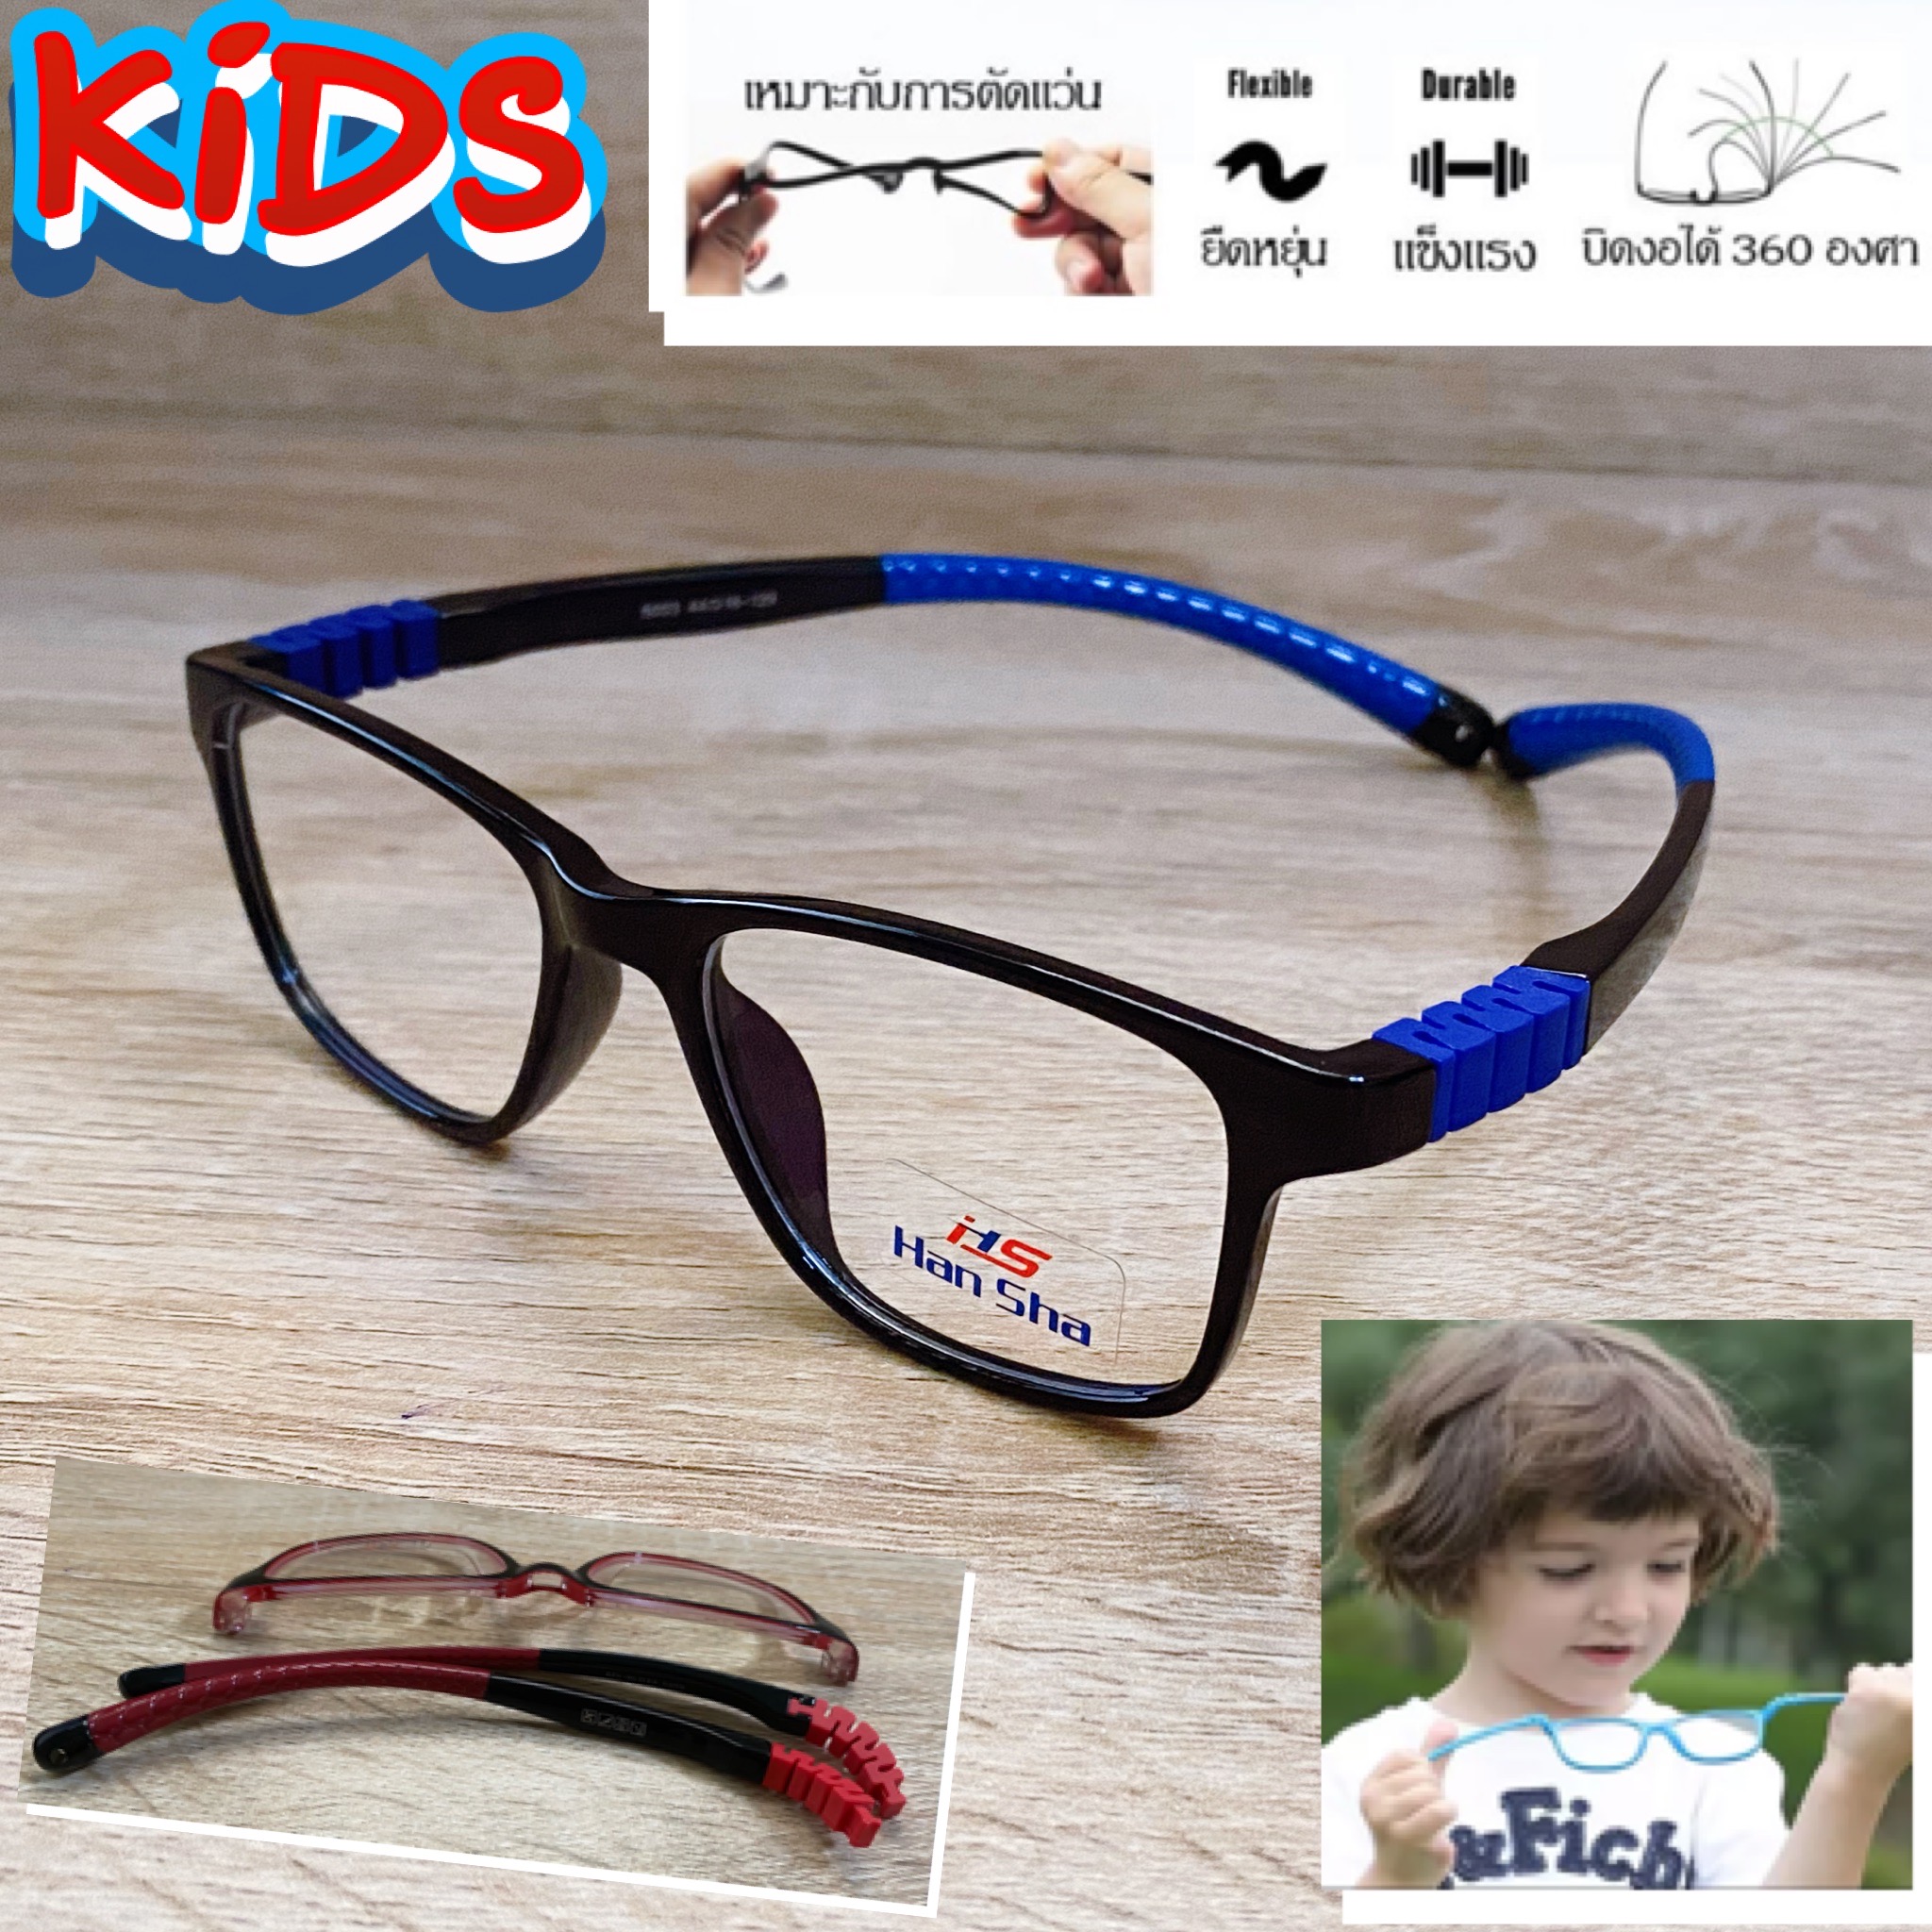 แว่นตาเด็ก กรอบแว่นตาเด็ก สำหรับตัดเลนส์ แว่นตา Han Sha รุ่น 5003 สีดำตัดน้ำเงิน ขาไม่ใช้น็อต ยืดหยุ่น ถอดขาเปลี่ยนได้ วัสดุ TR 90 เบา ไม่แตกหัก